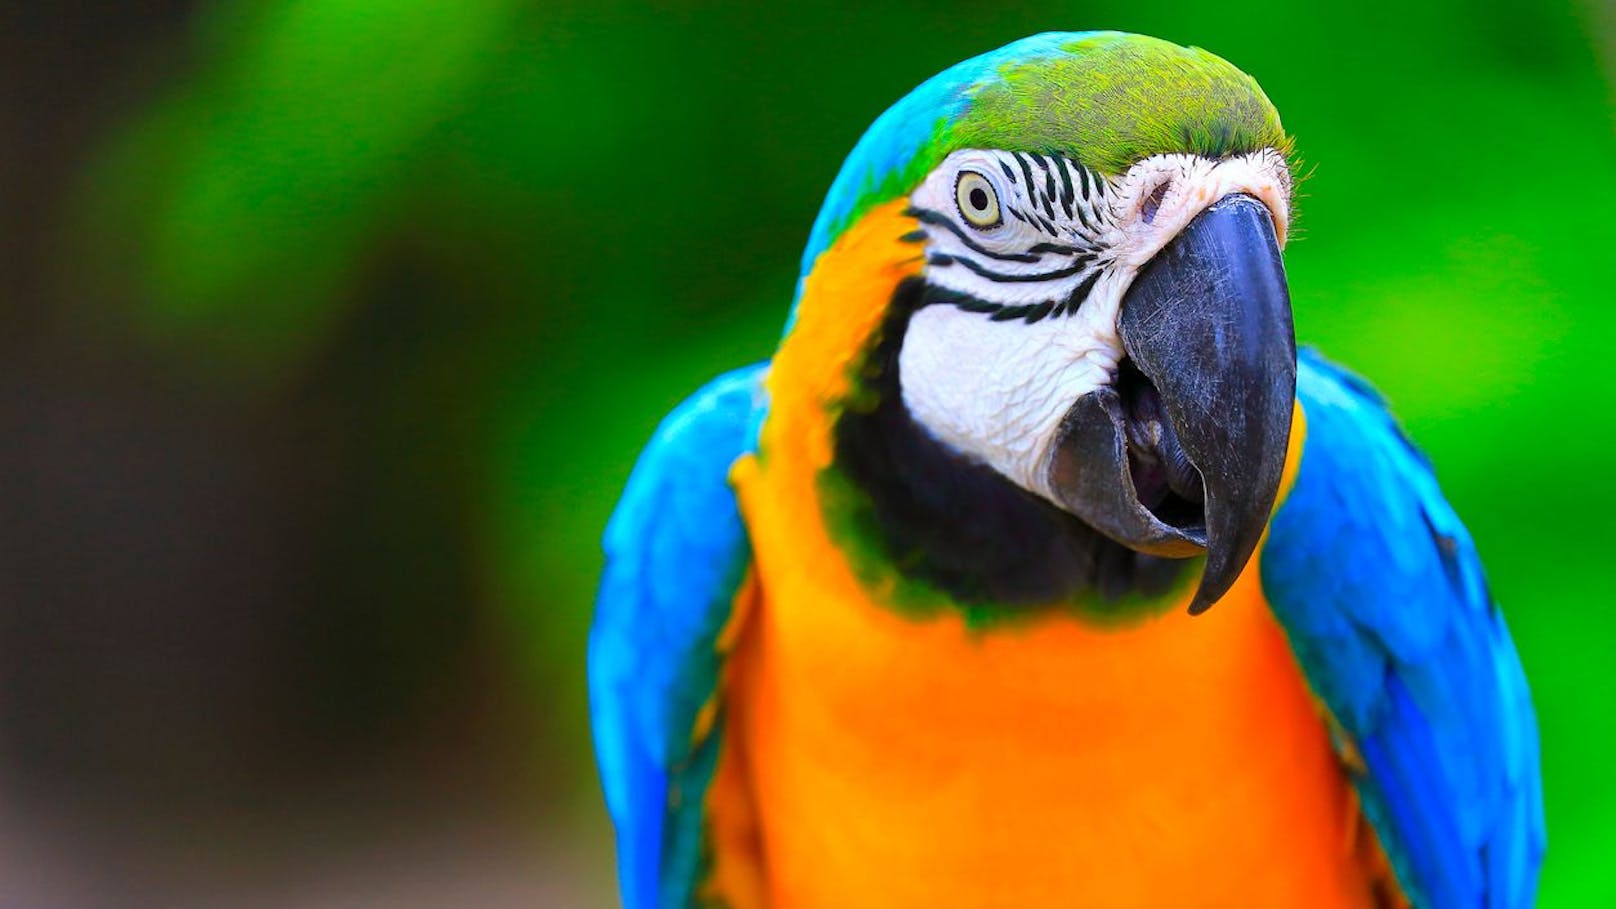 Wer den Papagei zuerst gesehen hat gehört lustigerweise nicht gerade zu den Kommunikativsten und hat Angst vor Ablehnung.